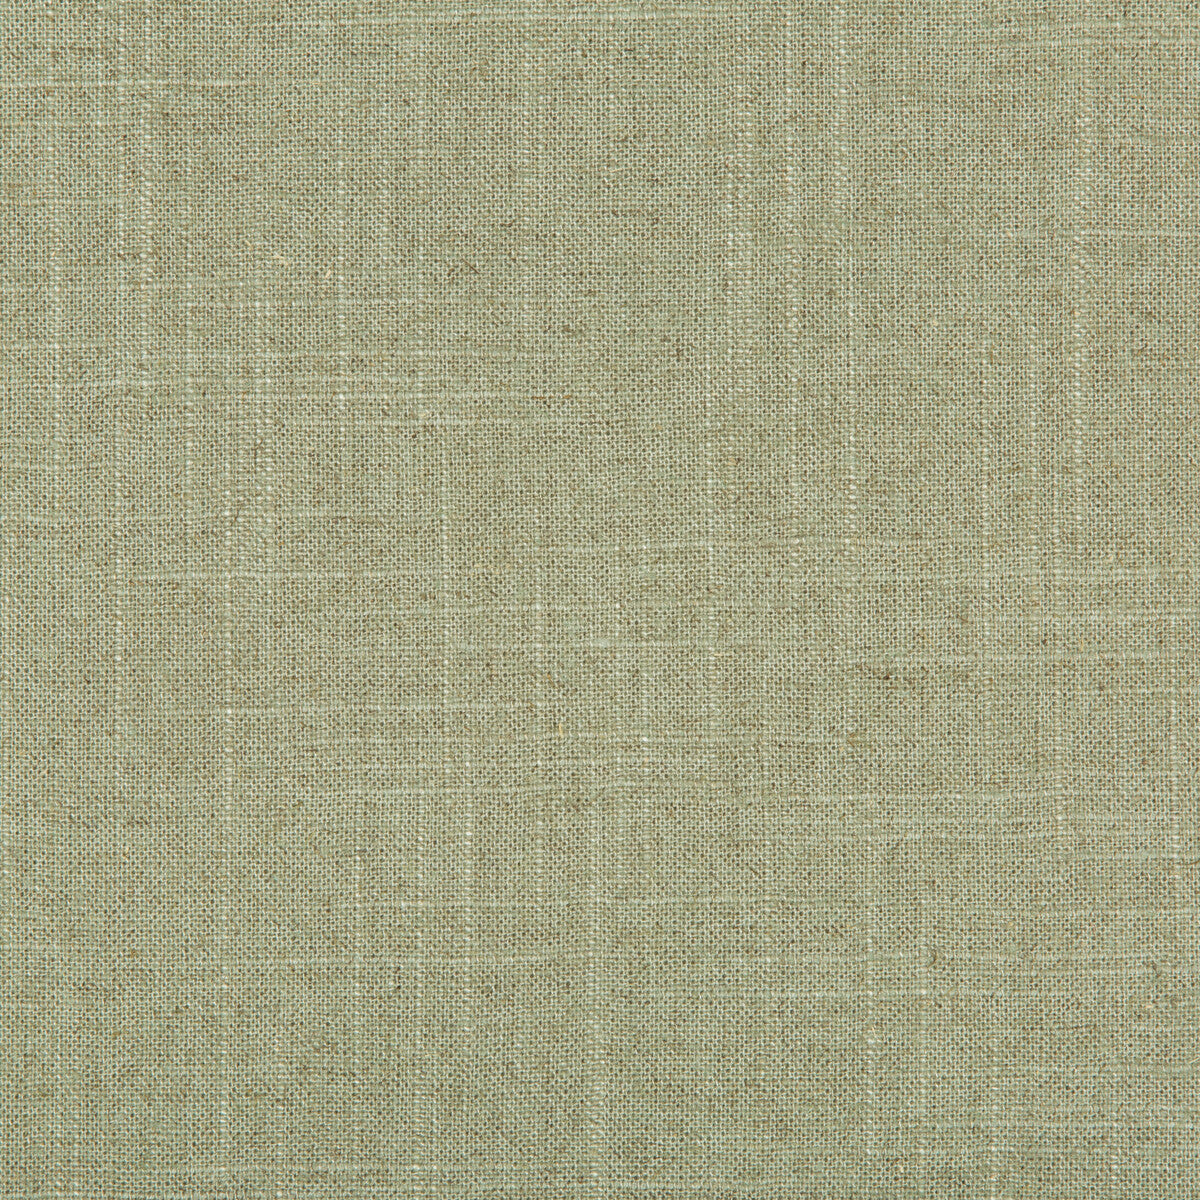 Kravet Basics fabric in 30808-3 color - pattern 30808.3.0 - by Kravet Basics